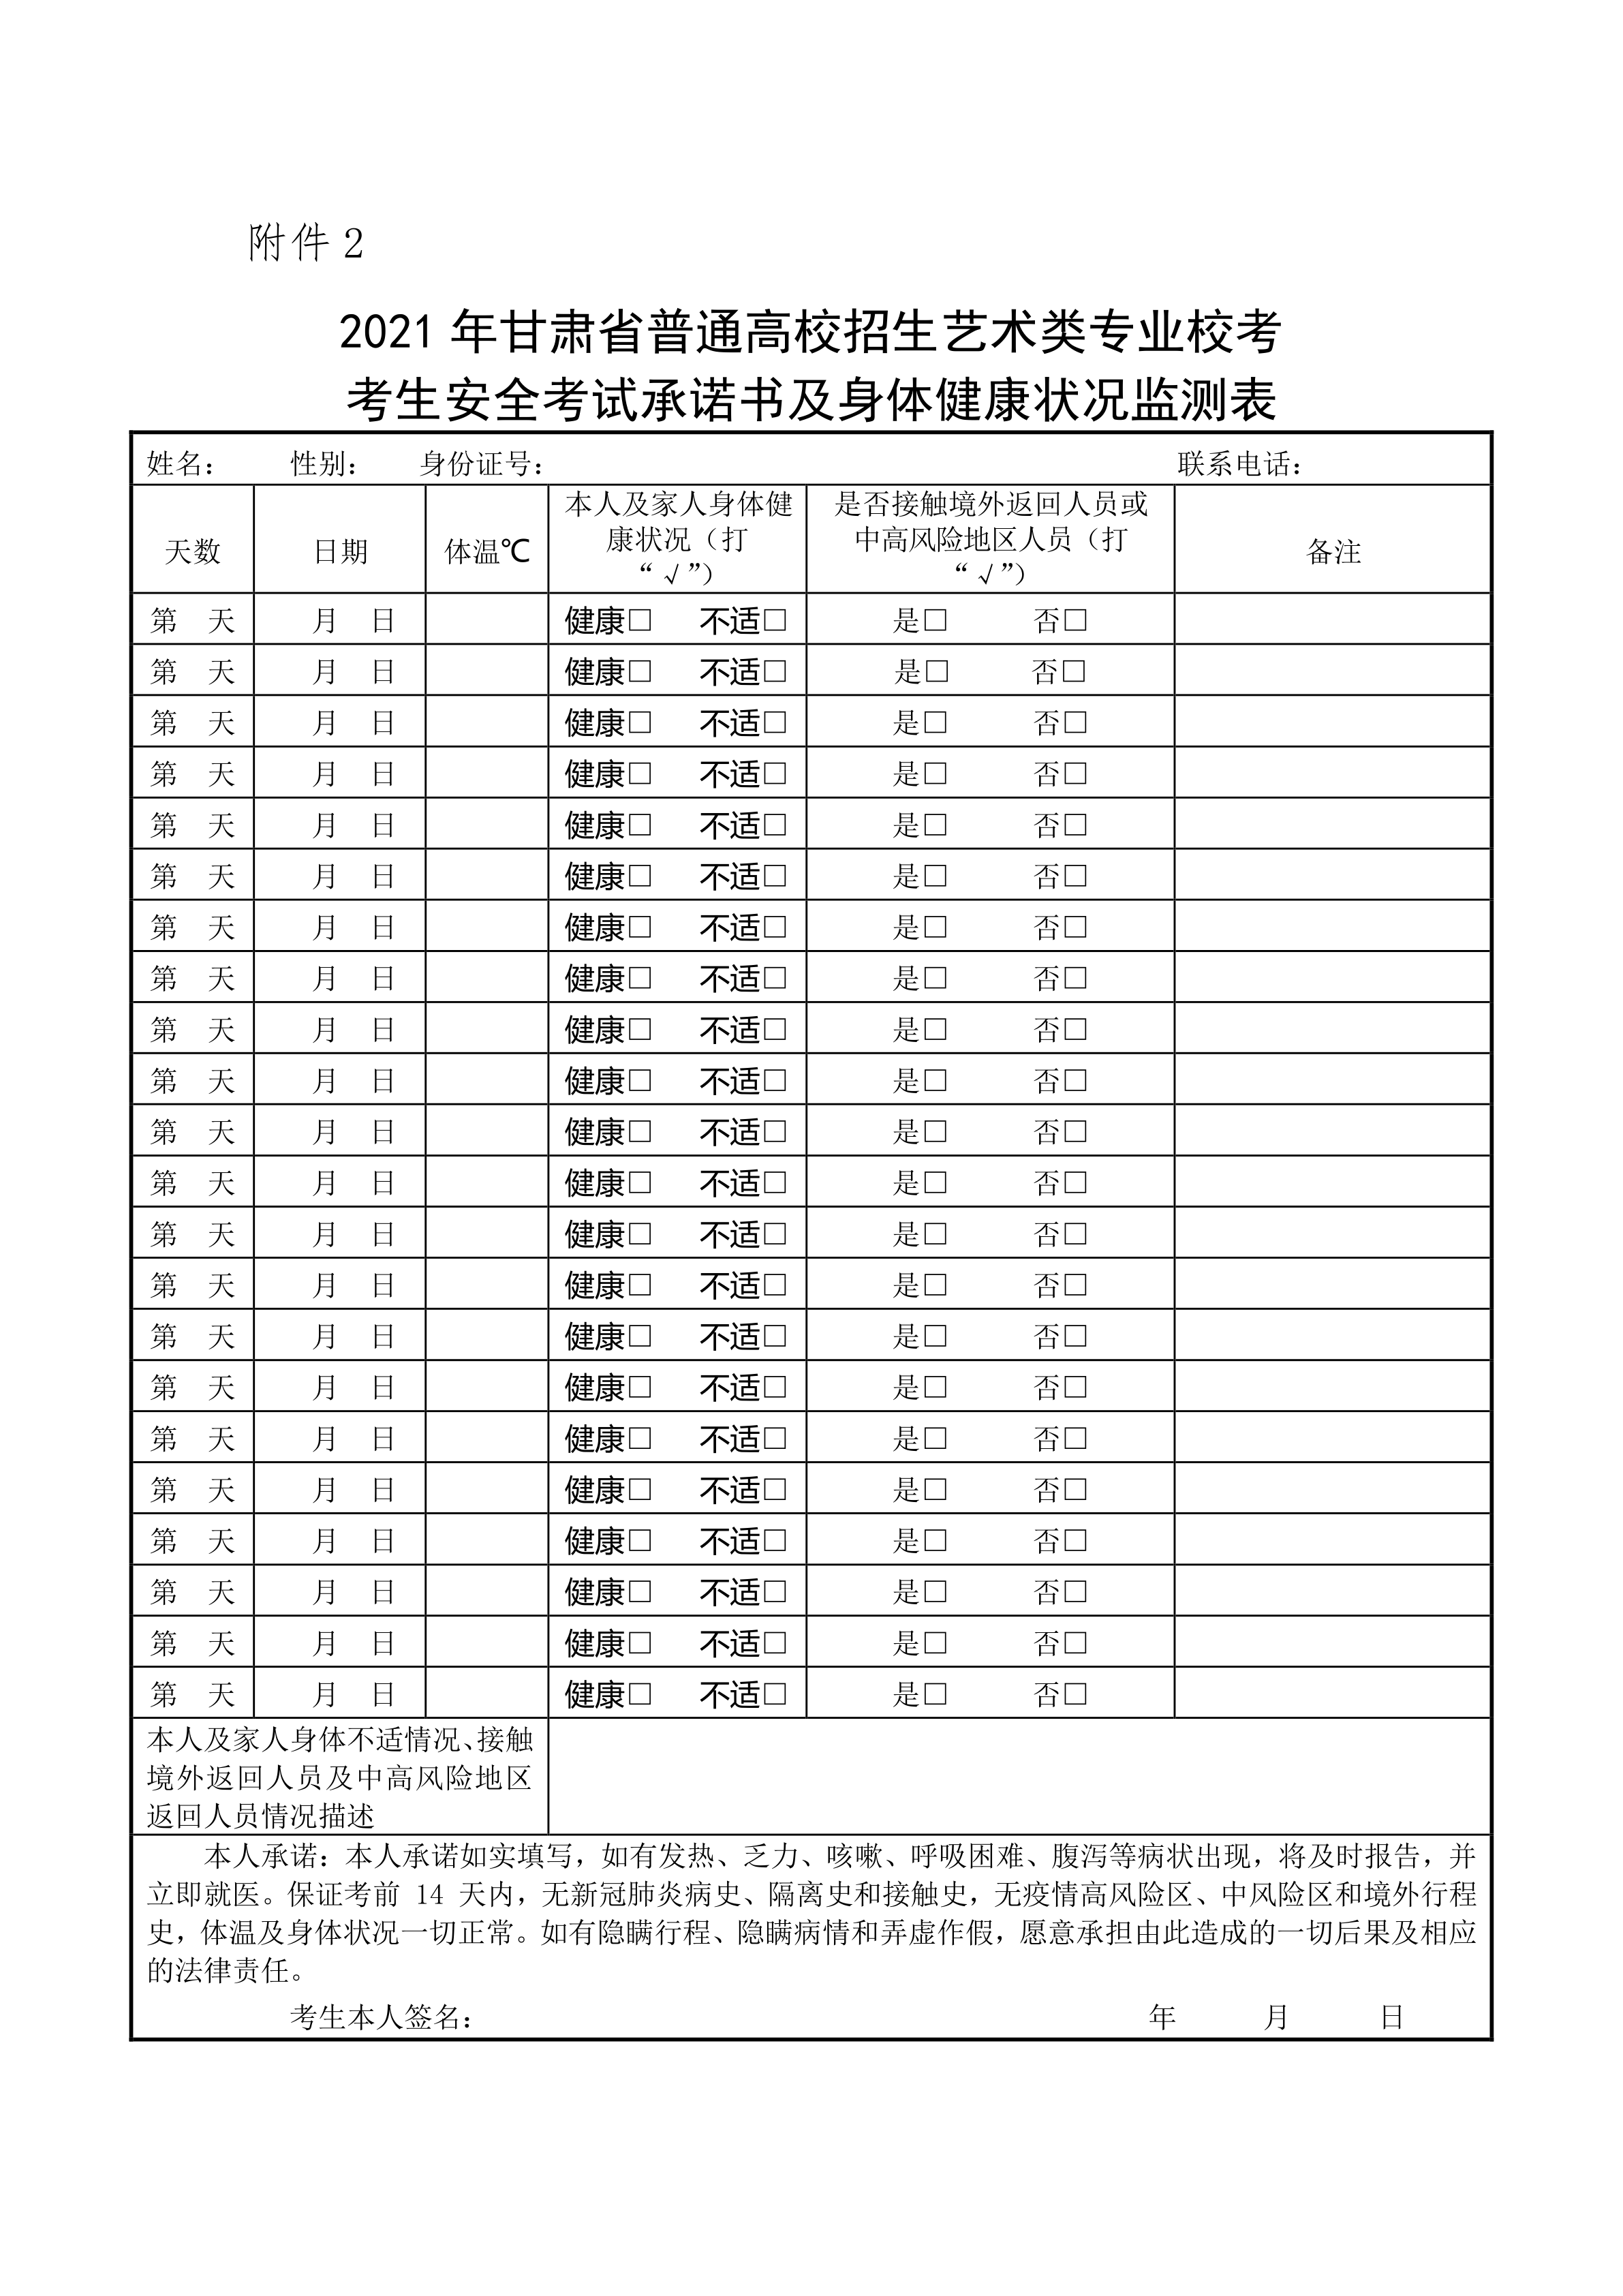 附件五：2021年甘肃省普通高校招生艺术类专业校考考生指南_8.png